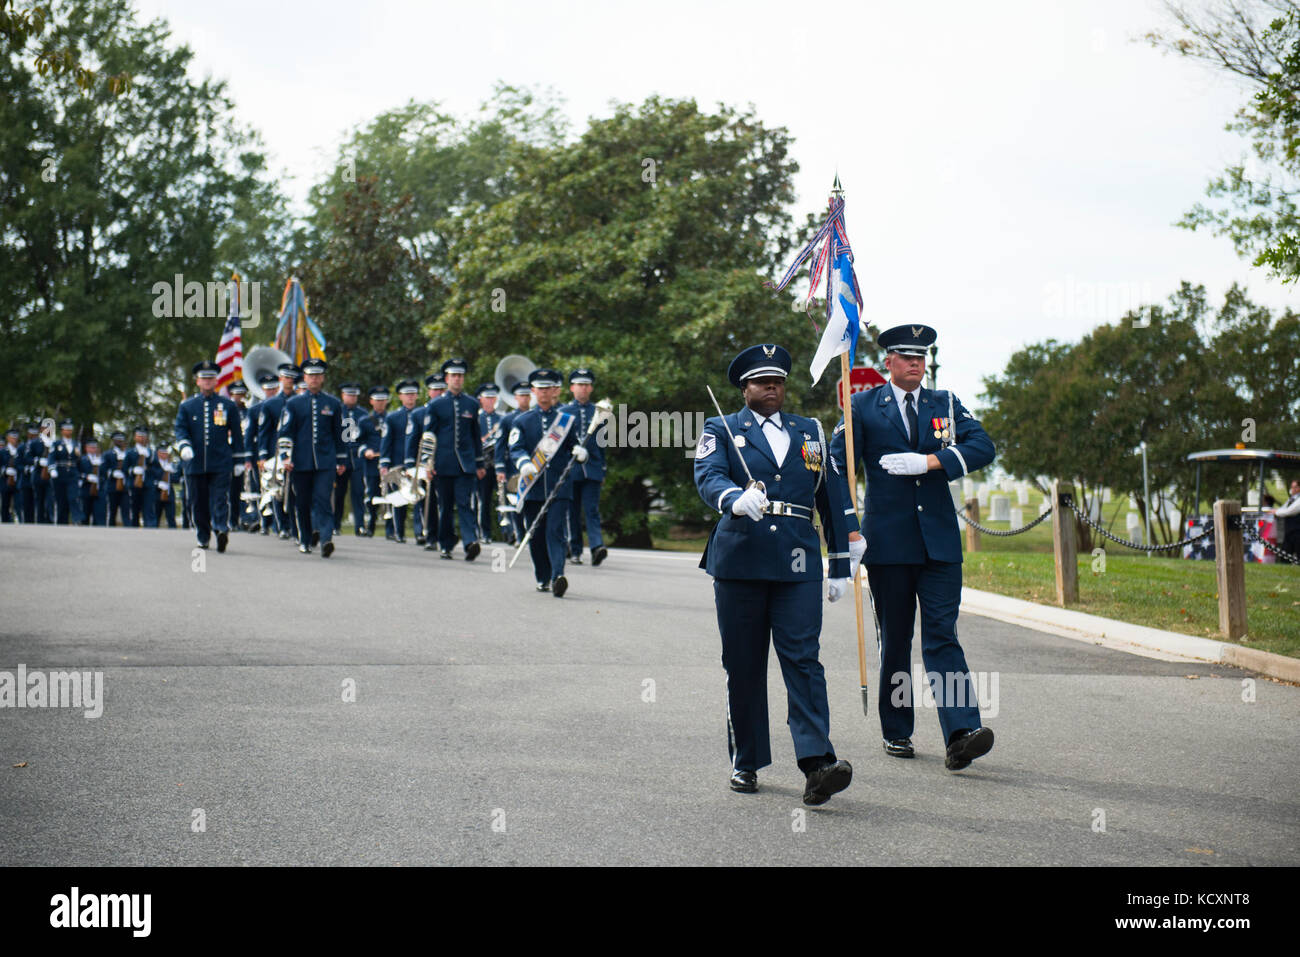 Gli Stati Uniti Air Force Guardia d'onore, IL GOVERNO DEGLI STATI UNITI Air Force Band e il 3D U.S. Reggimento di Fanteria (la vecchia guardia) cassettone plotone ha partecipato a tutti gli onori funebri PER GLI STATI UNITI Air Force Col. Robert Anderson nella sezione 55 di Al Cimitero Nazionale di Arlington, Arlington, Virginia, 6 ottobre 2017. Anderson, originariamente da Battle Creek, Michigan, è andato mancante su 6 ott. 1972 quando la sua F-4D si è schiantato in Vietnam del Nord. I suoi resti sono stati identificati su Ott. 22, 1998. (U.S. Foto dell'esercito da Elizabeth Fraser / il Cimitero Nazionale di Arlington / rilasciato) Foto Stock